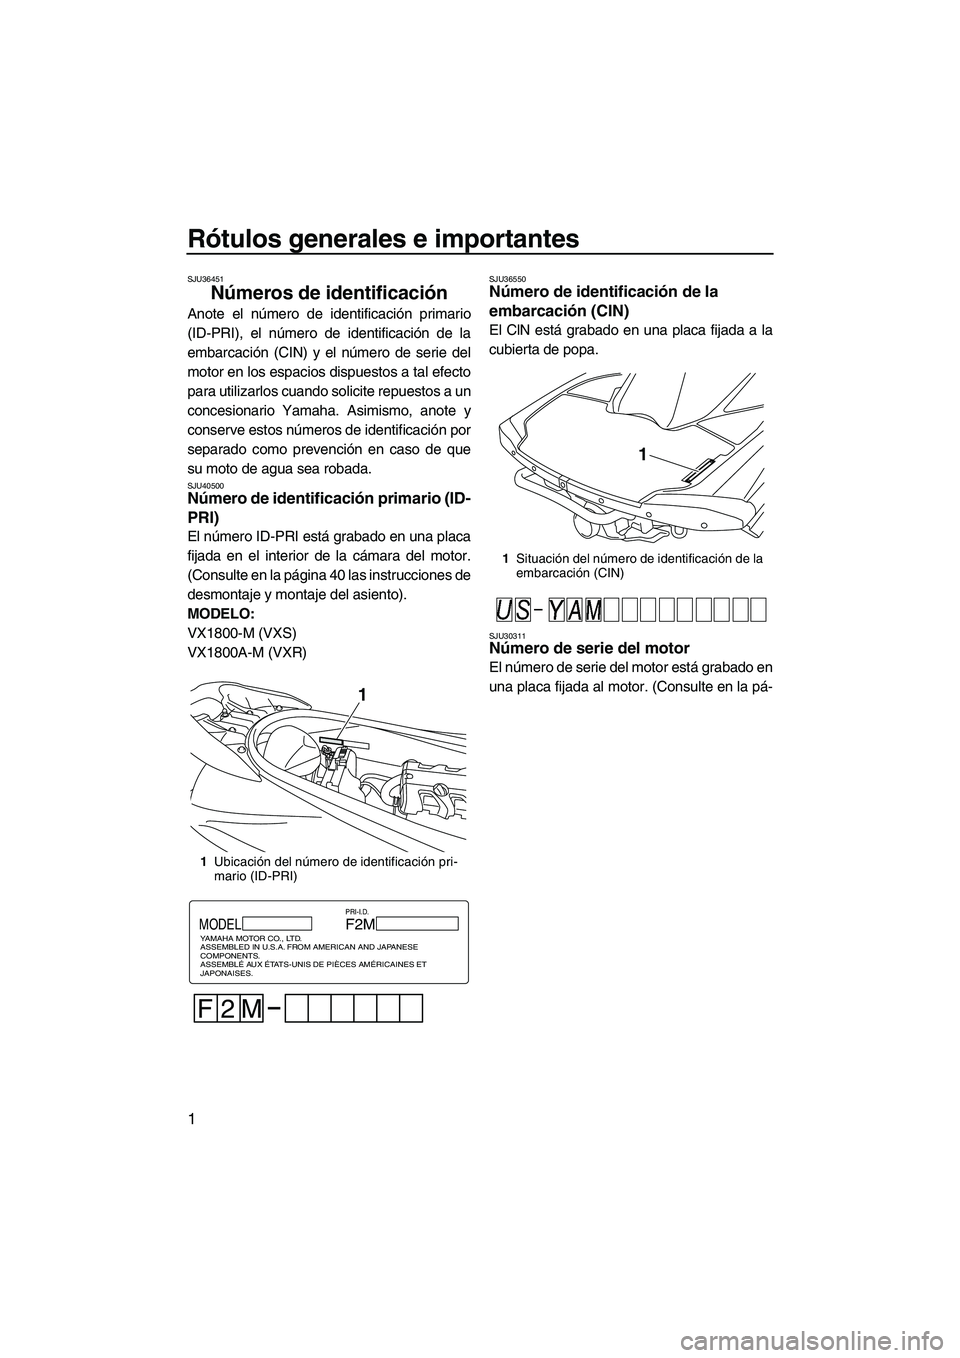 YAMAHA VXS 2013  Manuale de Empleo (in Spanish) Rótulos generales e importantes
1
SJU36451
Números de identificación 
Anote el número de identificación primario
(ID-PRI), el número de identificación de la
embarcación (CIN) y el número de s